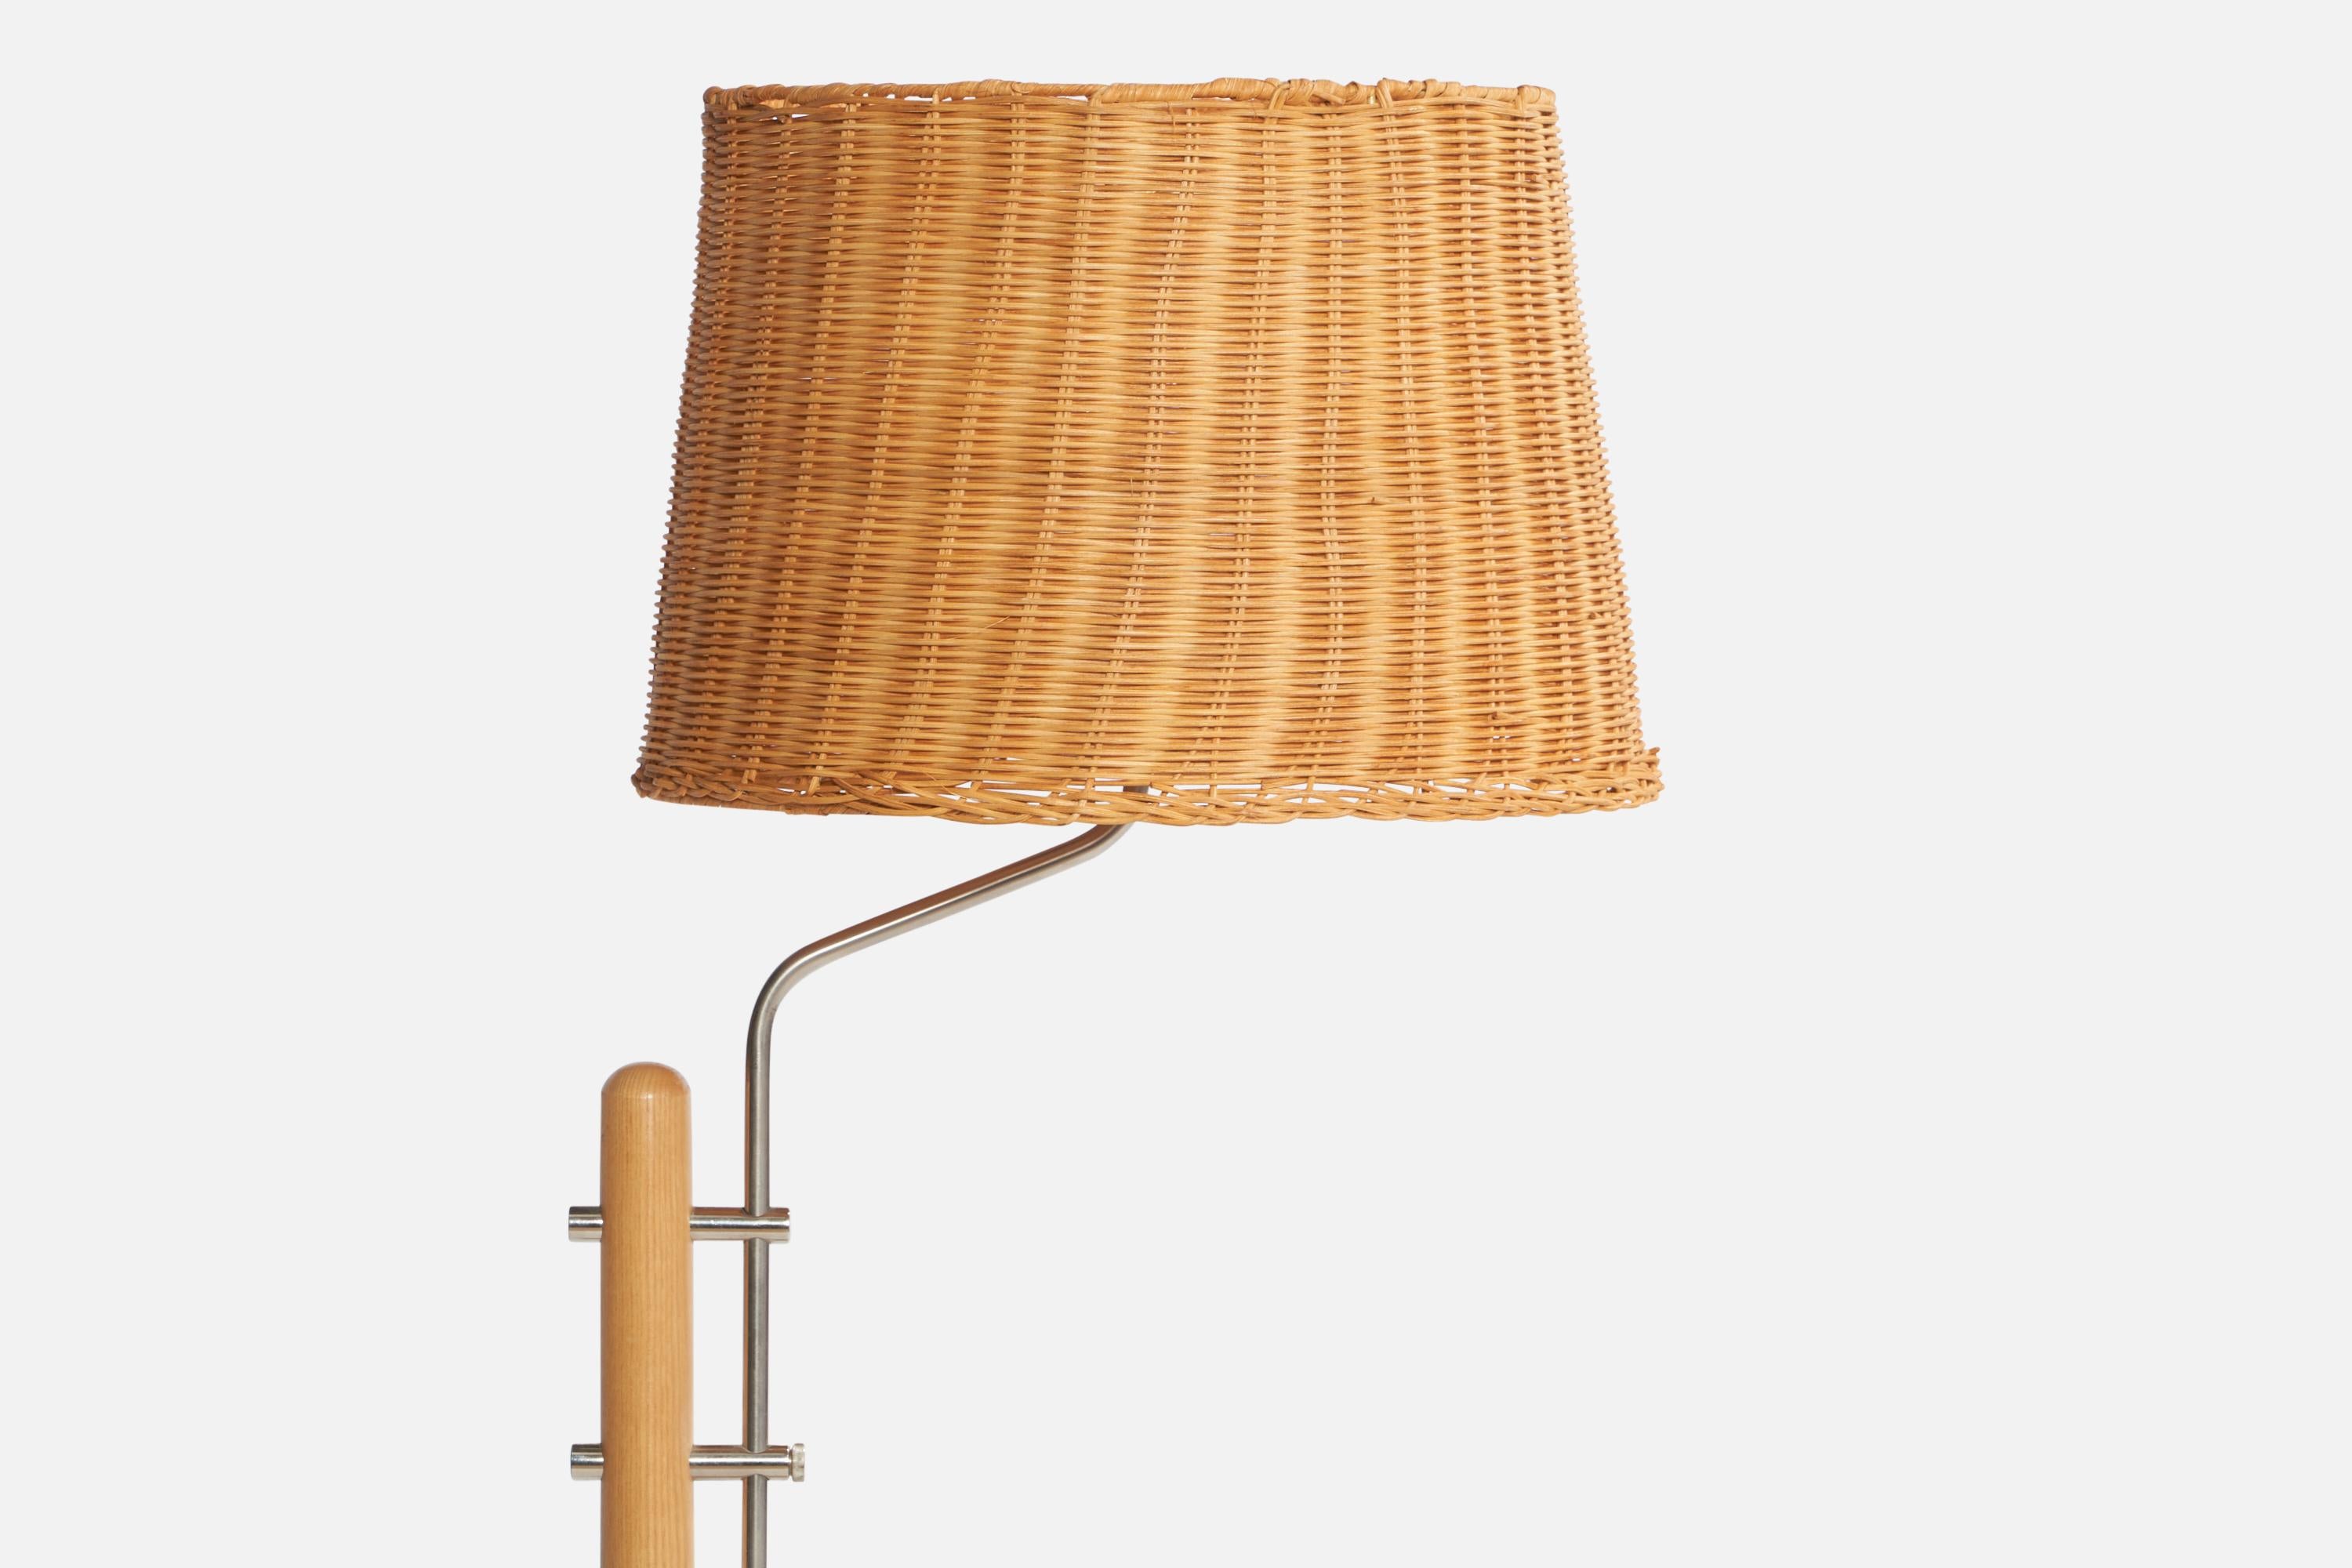 Swedish Designer, Floor Lamps, Oak, Steel, Rattan, Sweden, 1970s For Sale 1